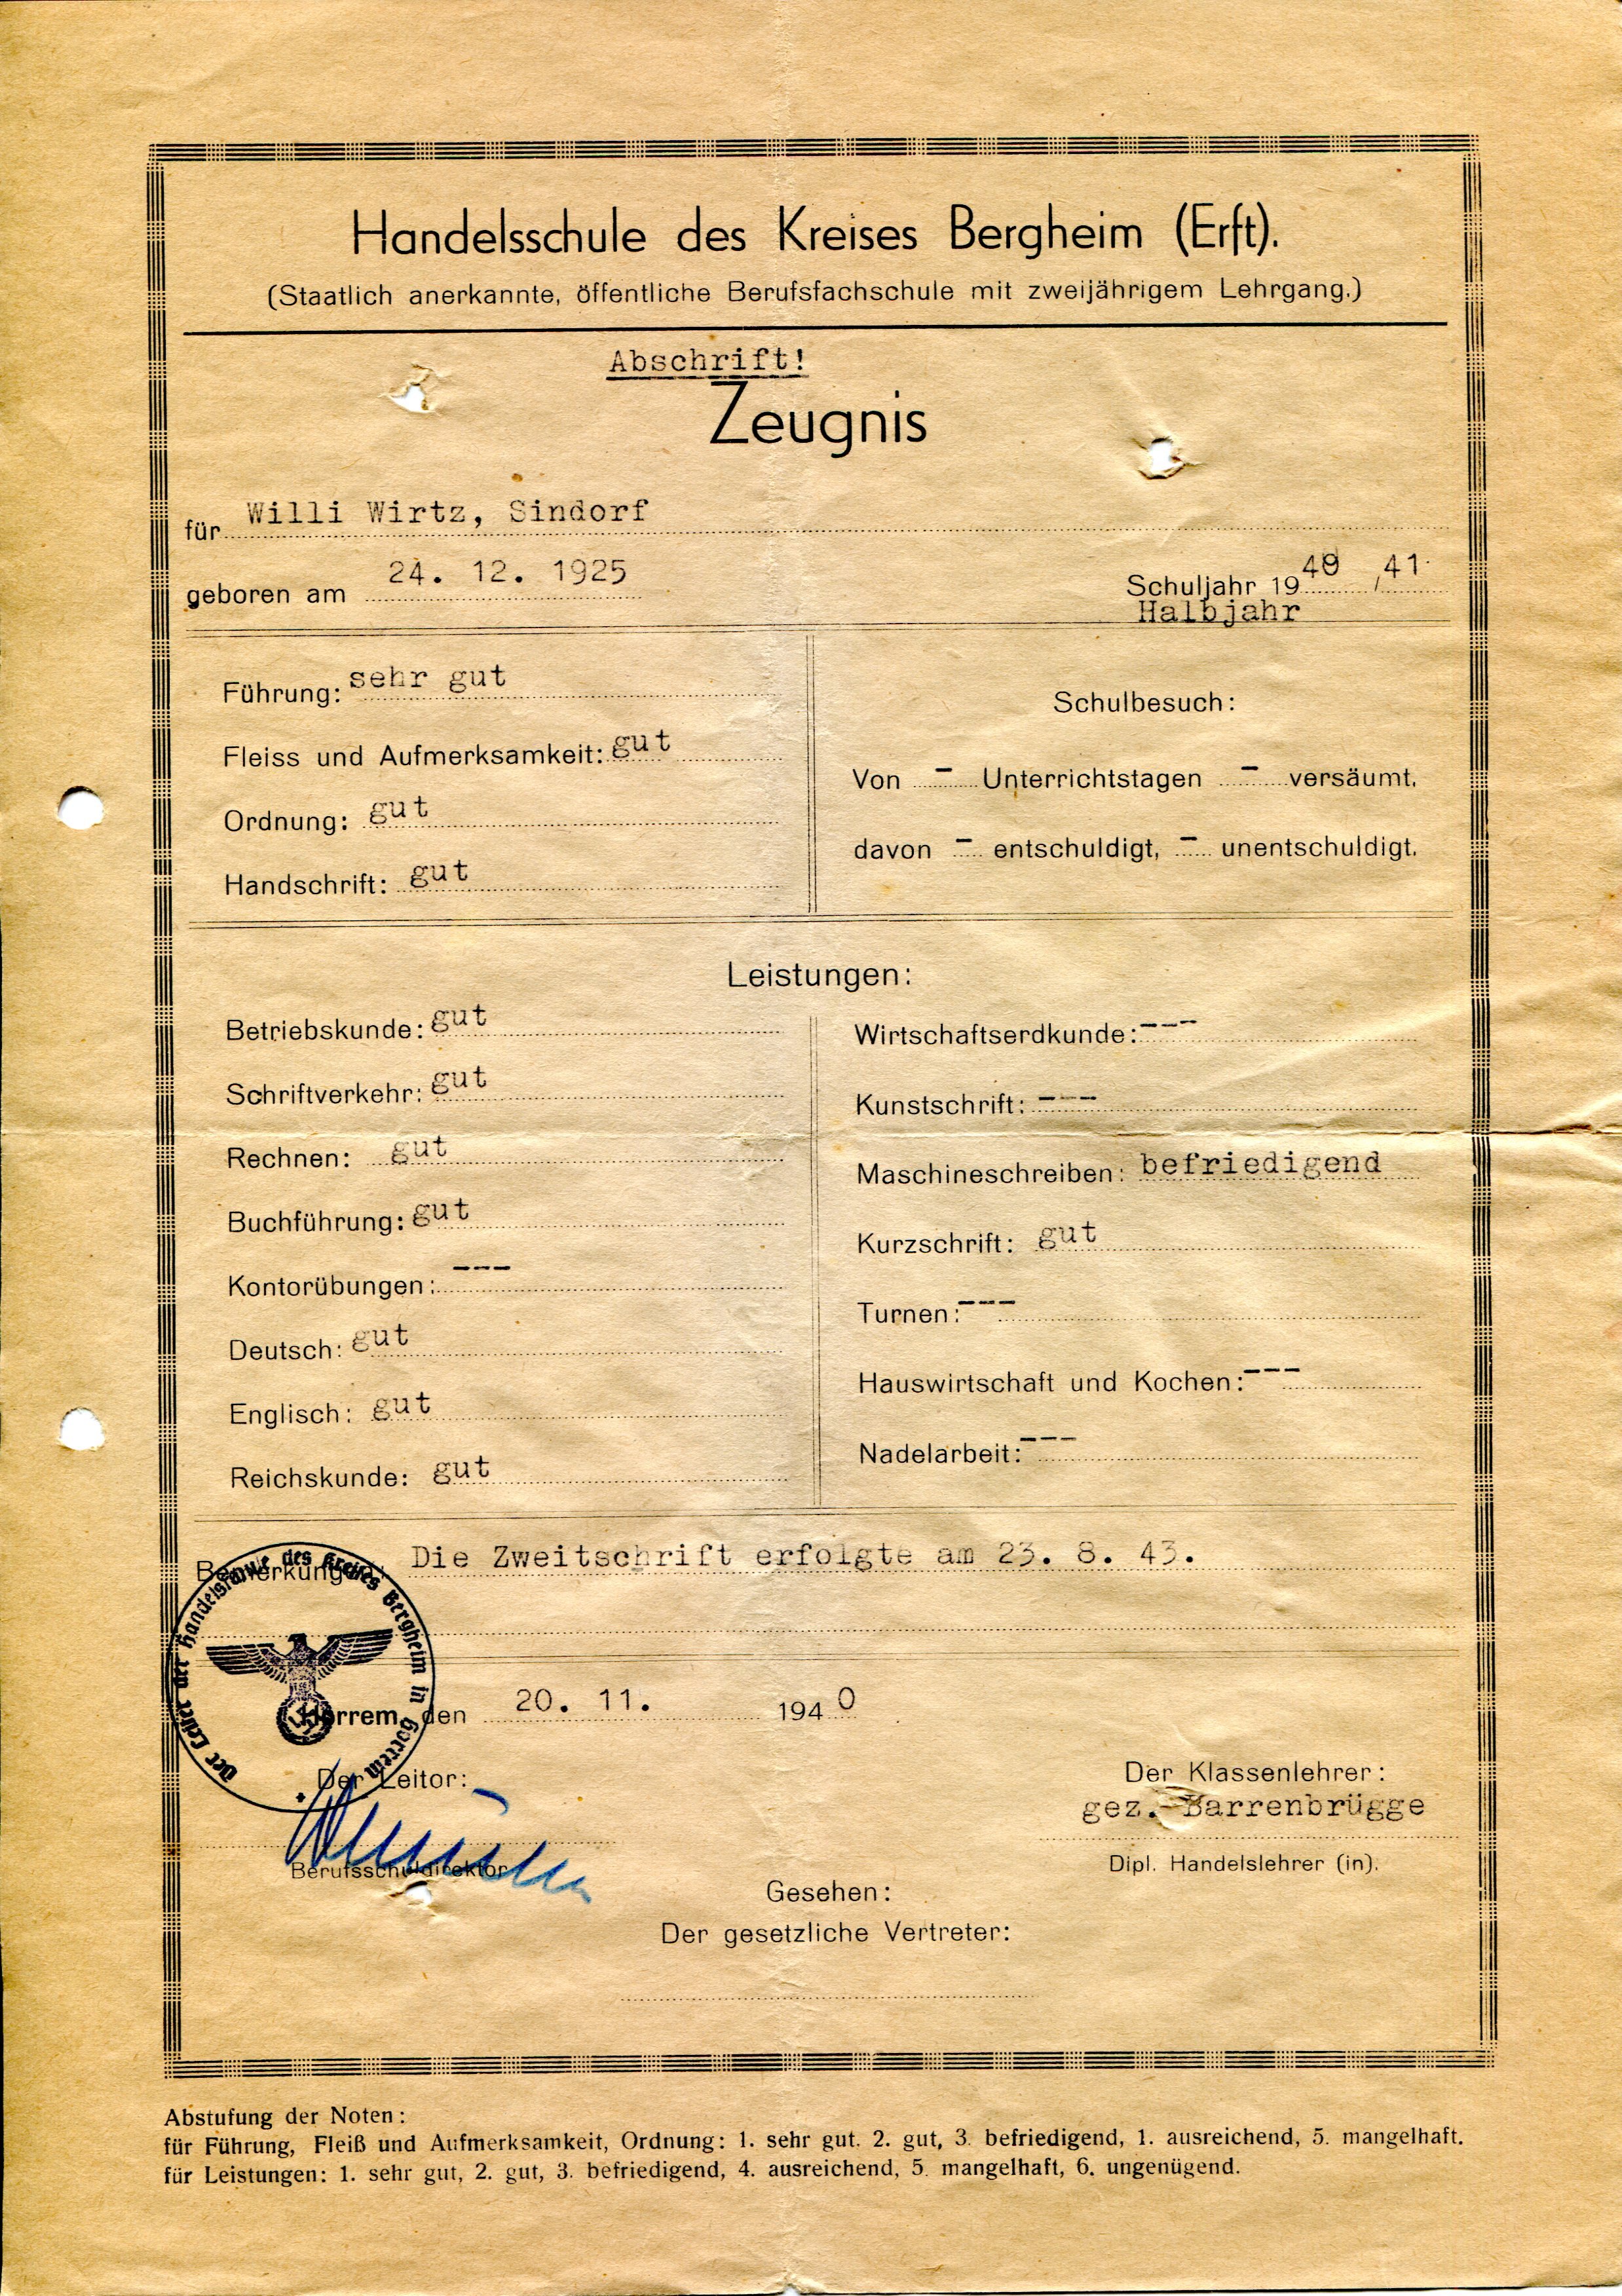 Entlassungszeugnis | Handelsschule | Wilhelm Wirtz | 1940/1941 (Heimatmuseum Sindorf CC BY-NC-SA)